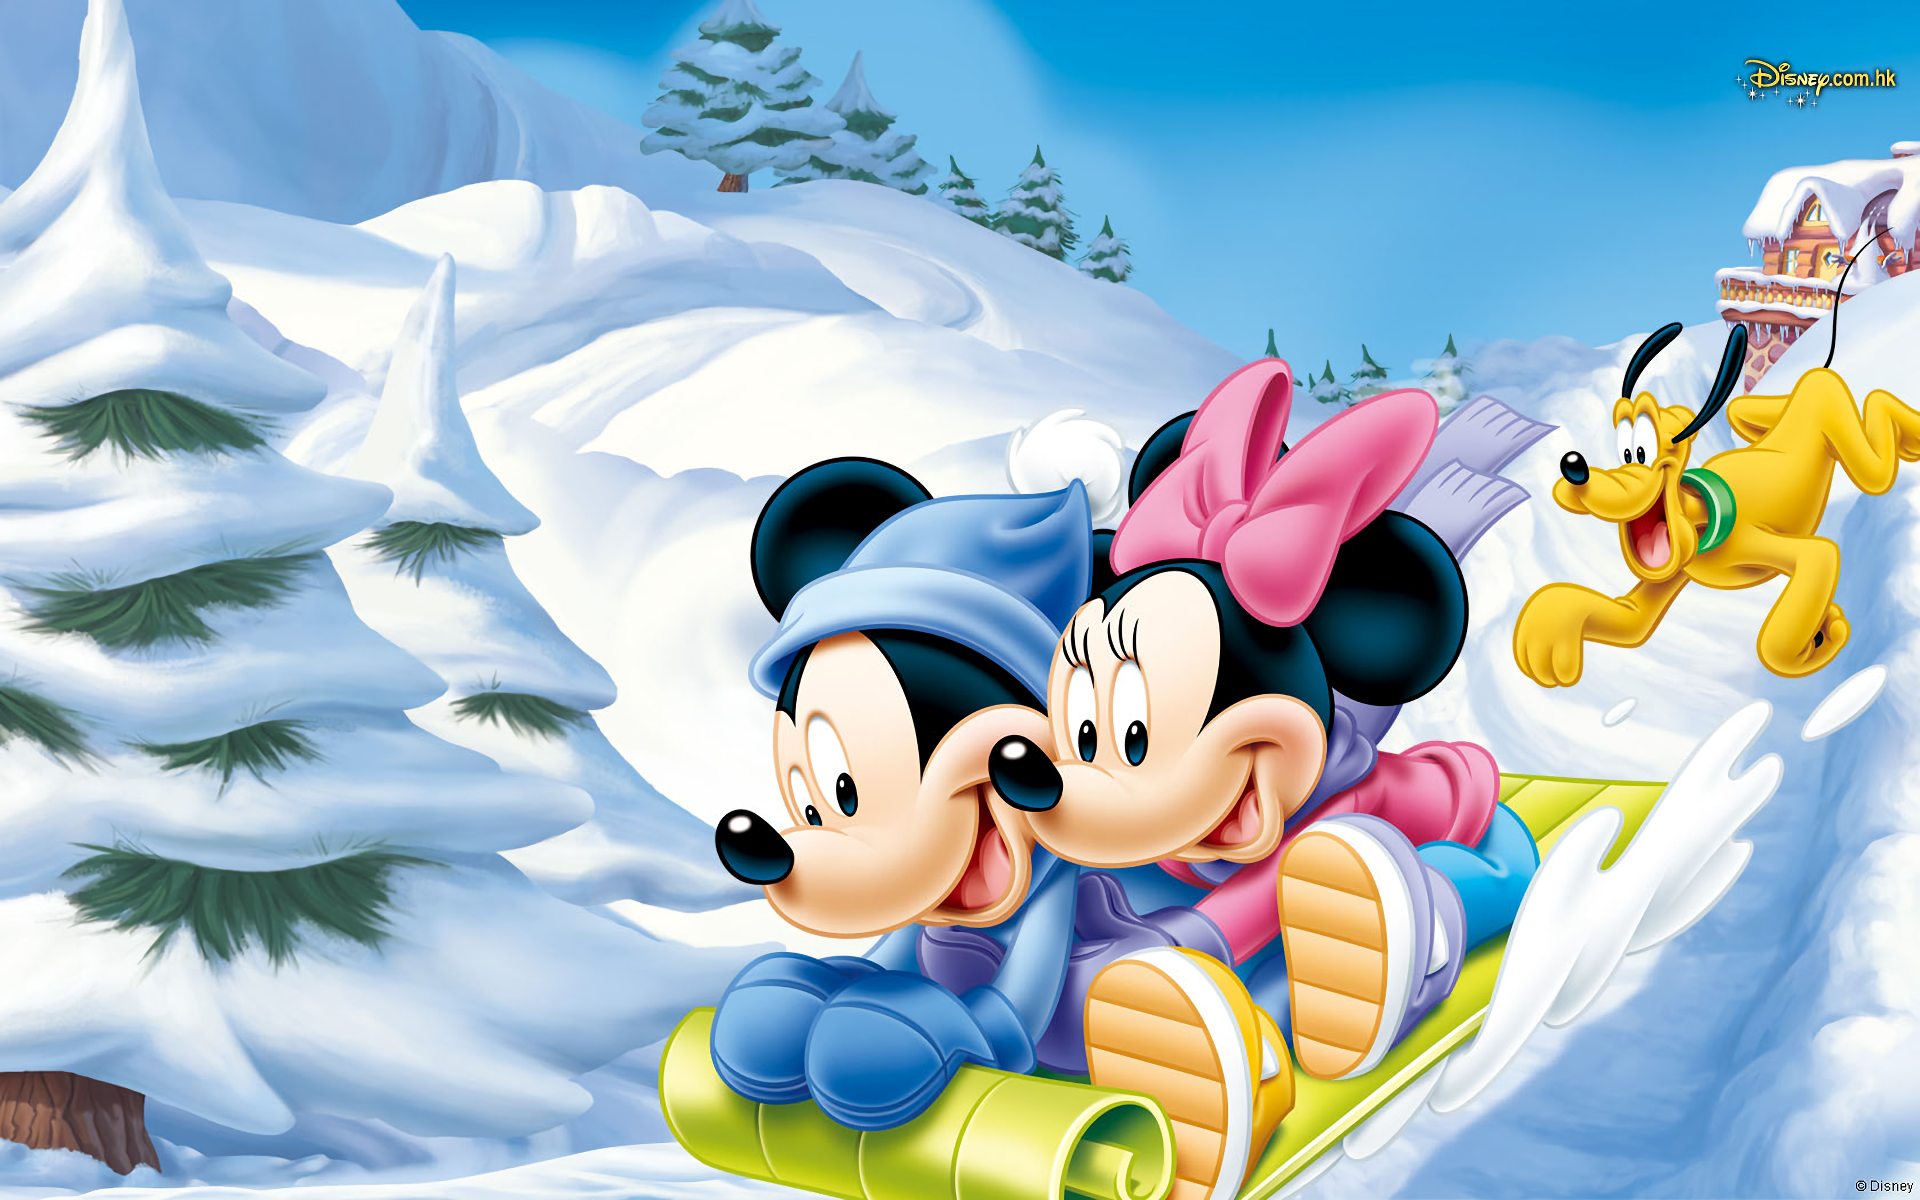 Hình ảnh chuột Mickey đáng yêu dễ thương cho năm Canh Tý - [Kích thước hình ảnh: 1920x1200 px]